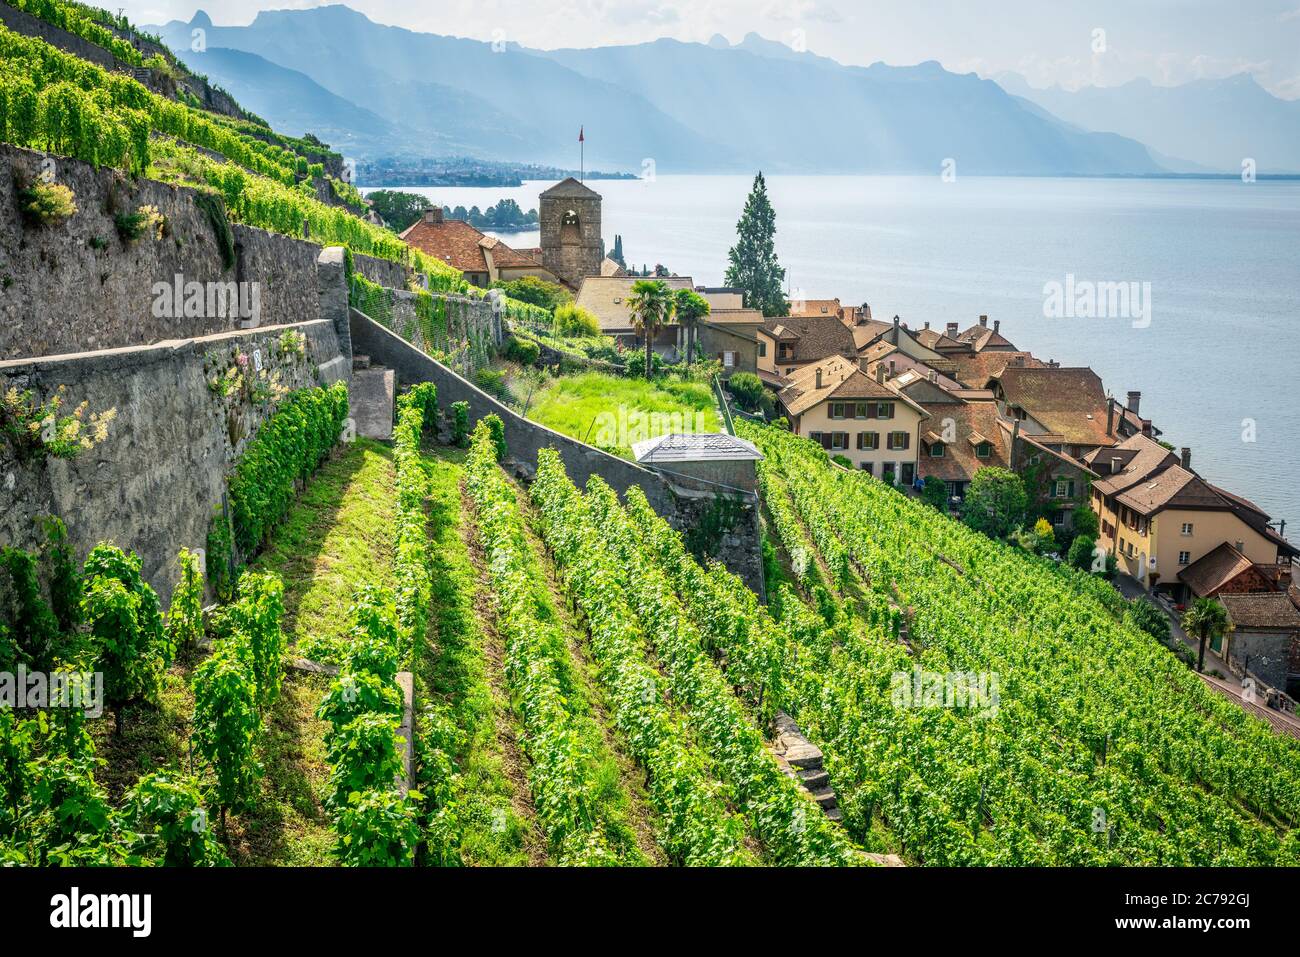 Panorama pittoresque de Lavaux avec les vignobles en terrasse du village de Saint-Saphorin et le lac de Genève entouré de montagnes à Lavaux Vaud Suisse Banque D'Images